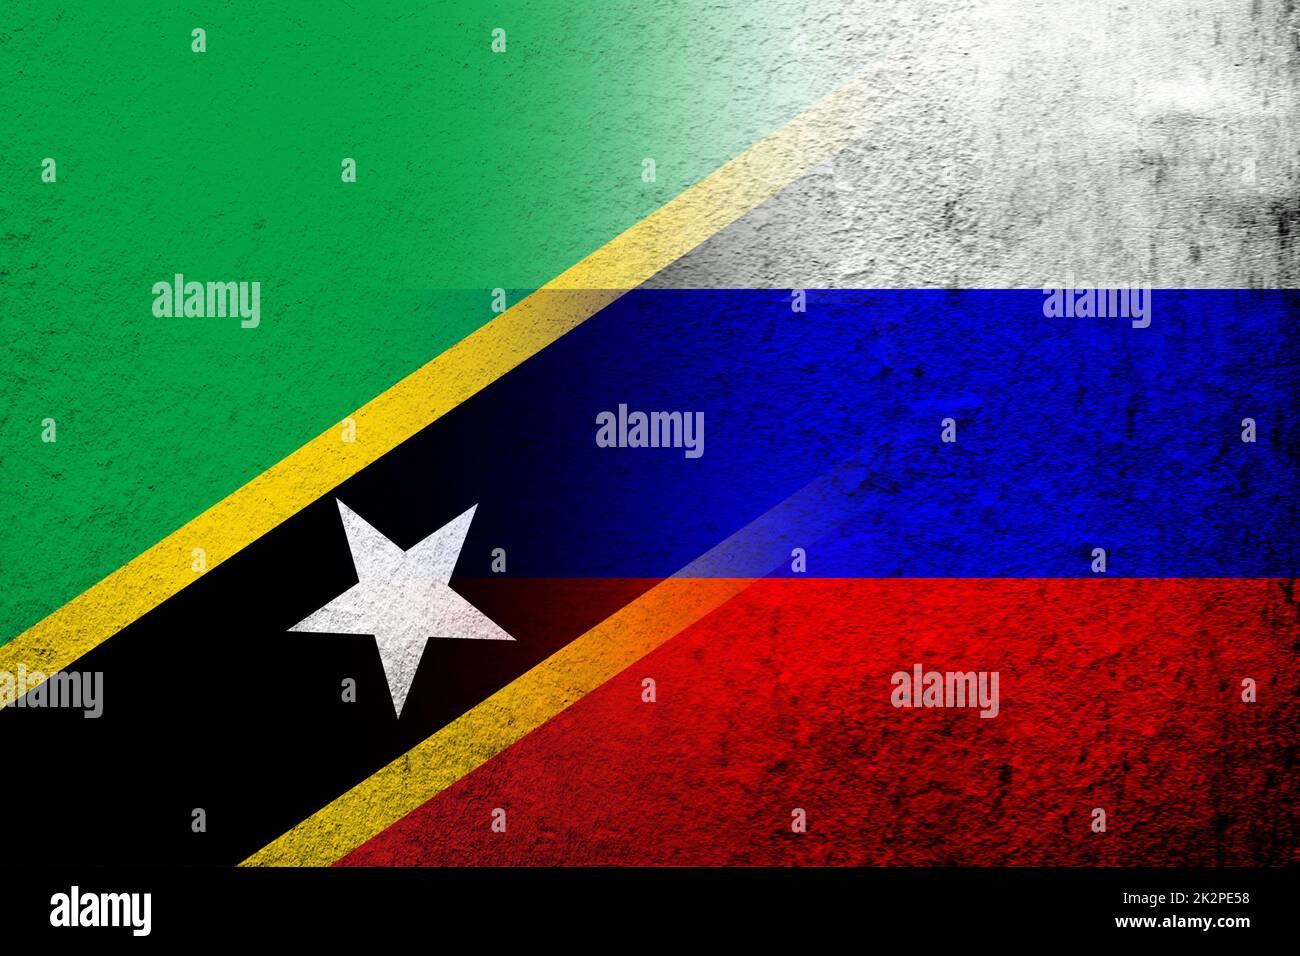 Nationalflagge der Russischen Föderation mit der Föderation der Heiligen Christopher und Nevis St. Kitts und Nevis Nationalflagge. Grungen Hintergrund Stockfoto